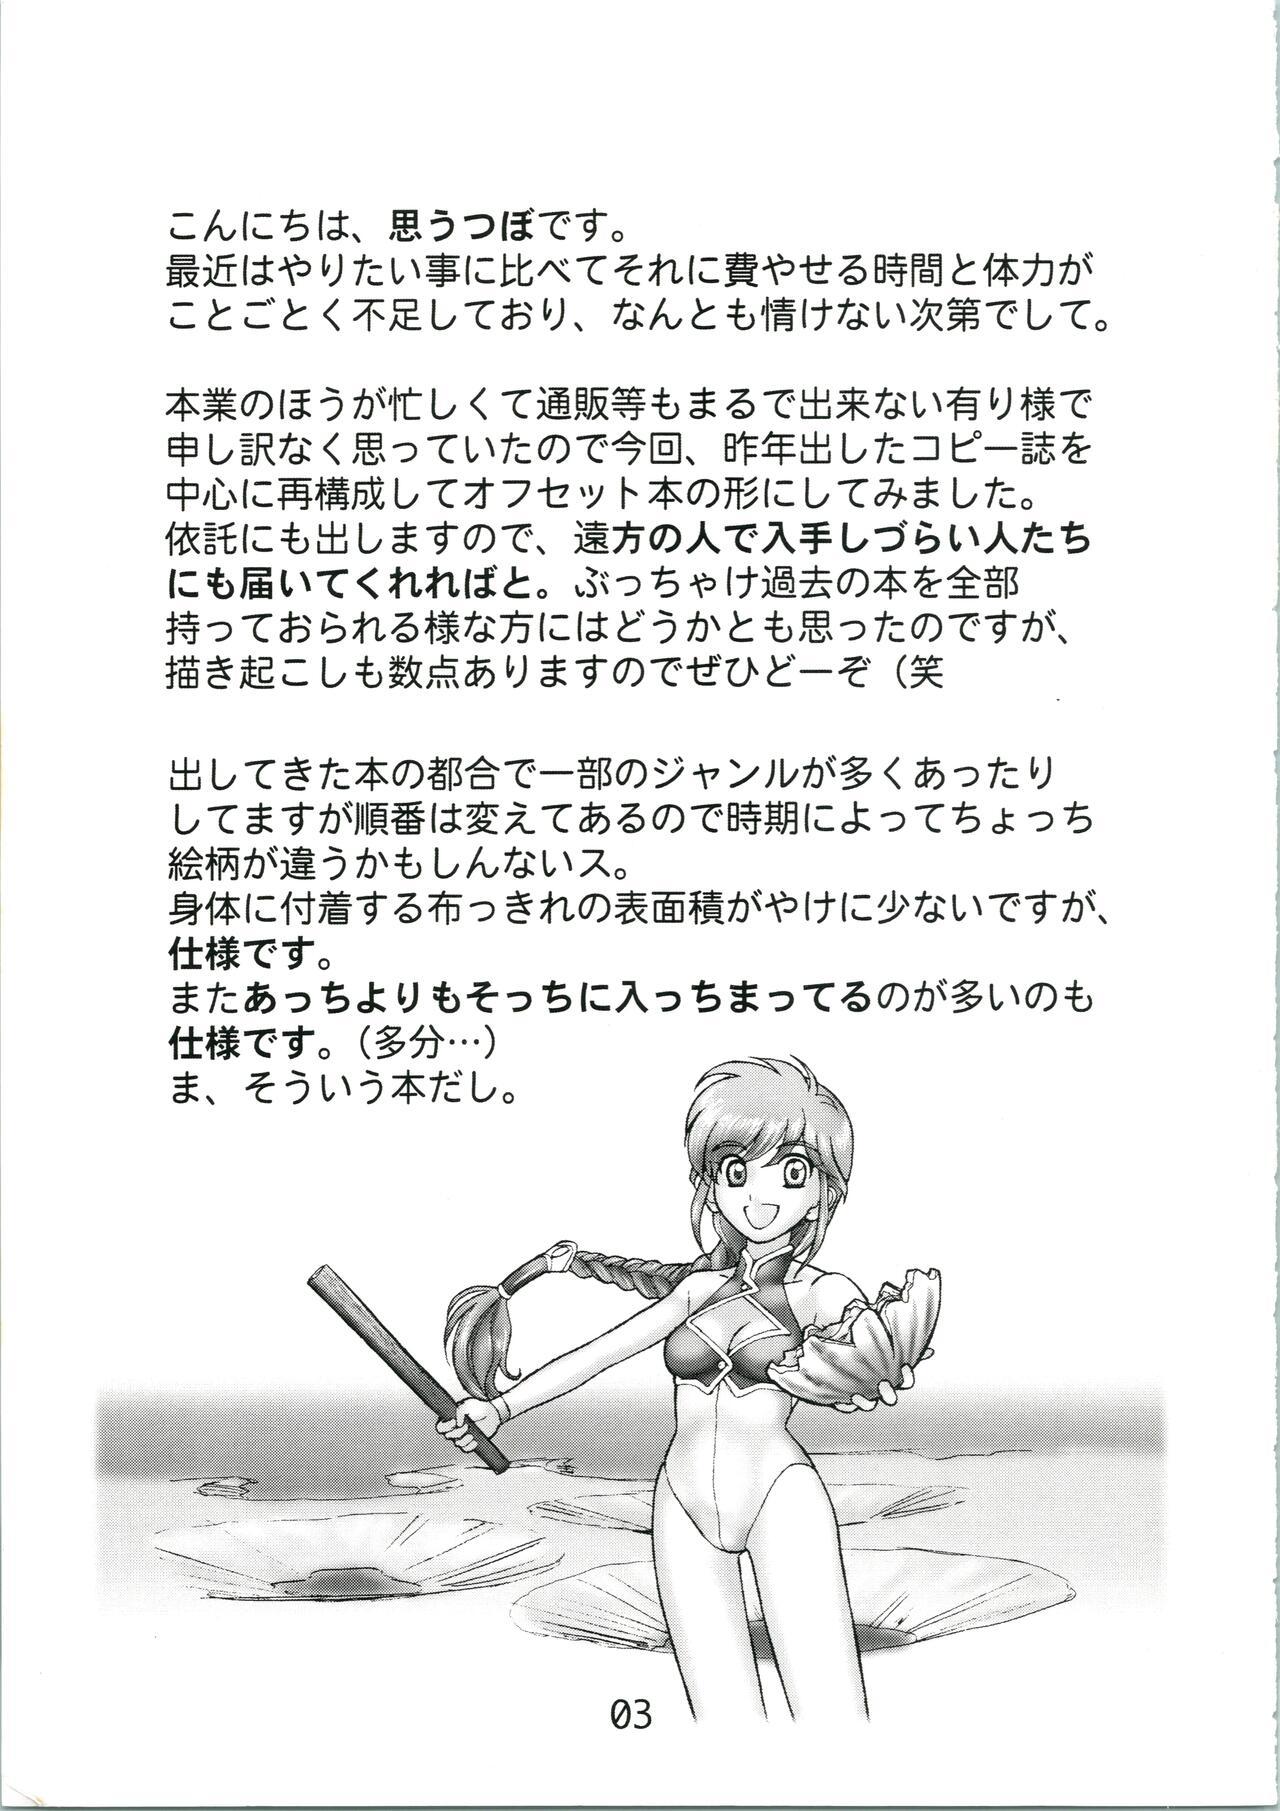 Riding Urabidou Tsuushin Okawari! - Gunparade march Sonic soldier borgman Yumeria Tan - Page 3